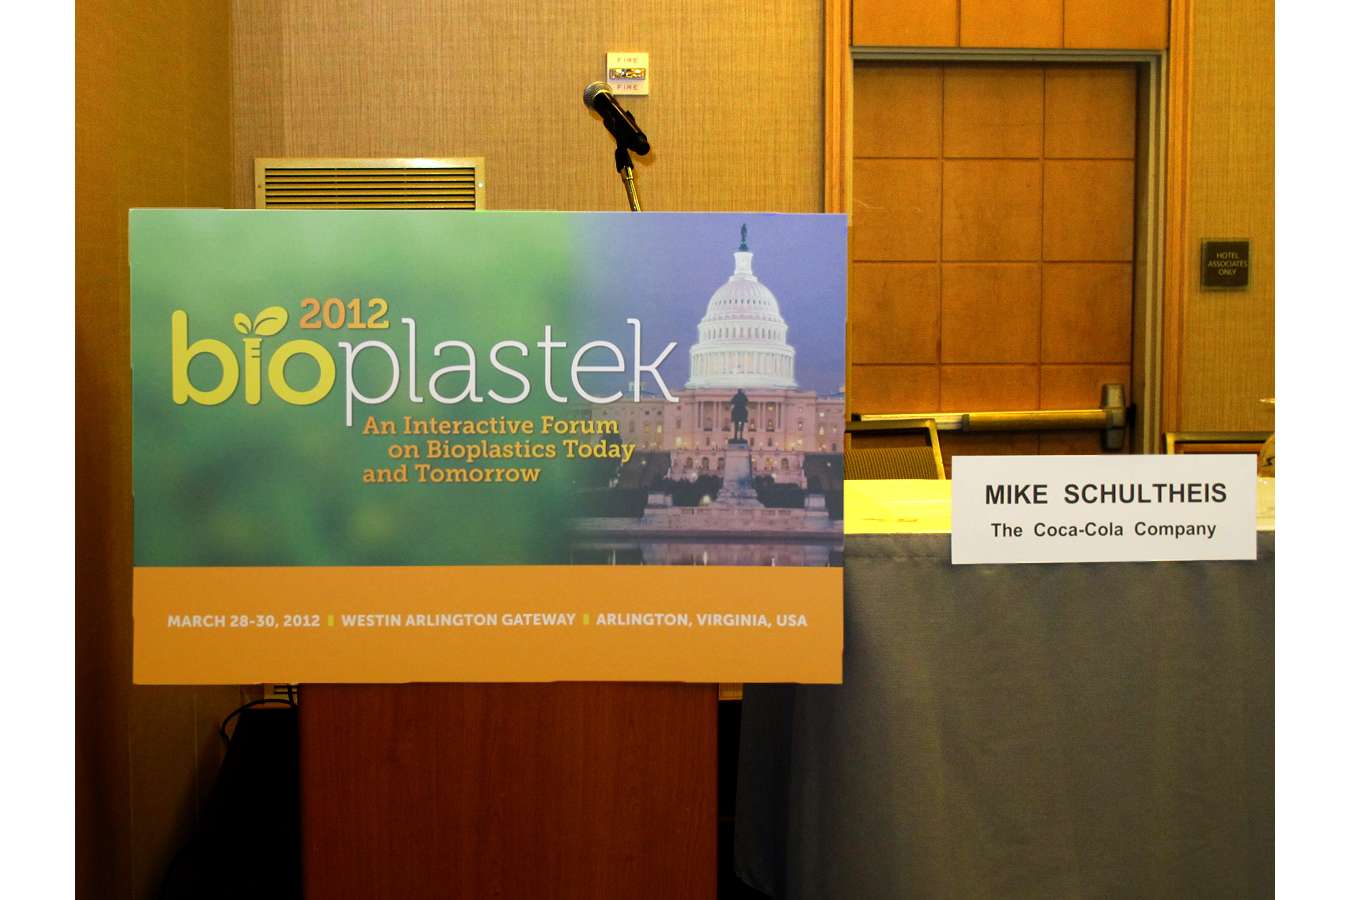 BIOP12 1 : Signage for BioPlastek Forum Produced on Eco-Responsible Media